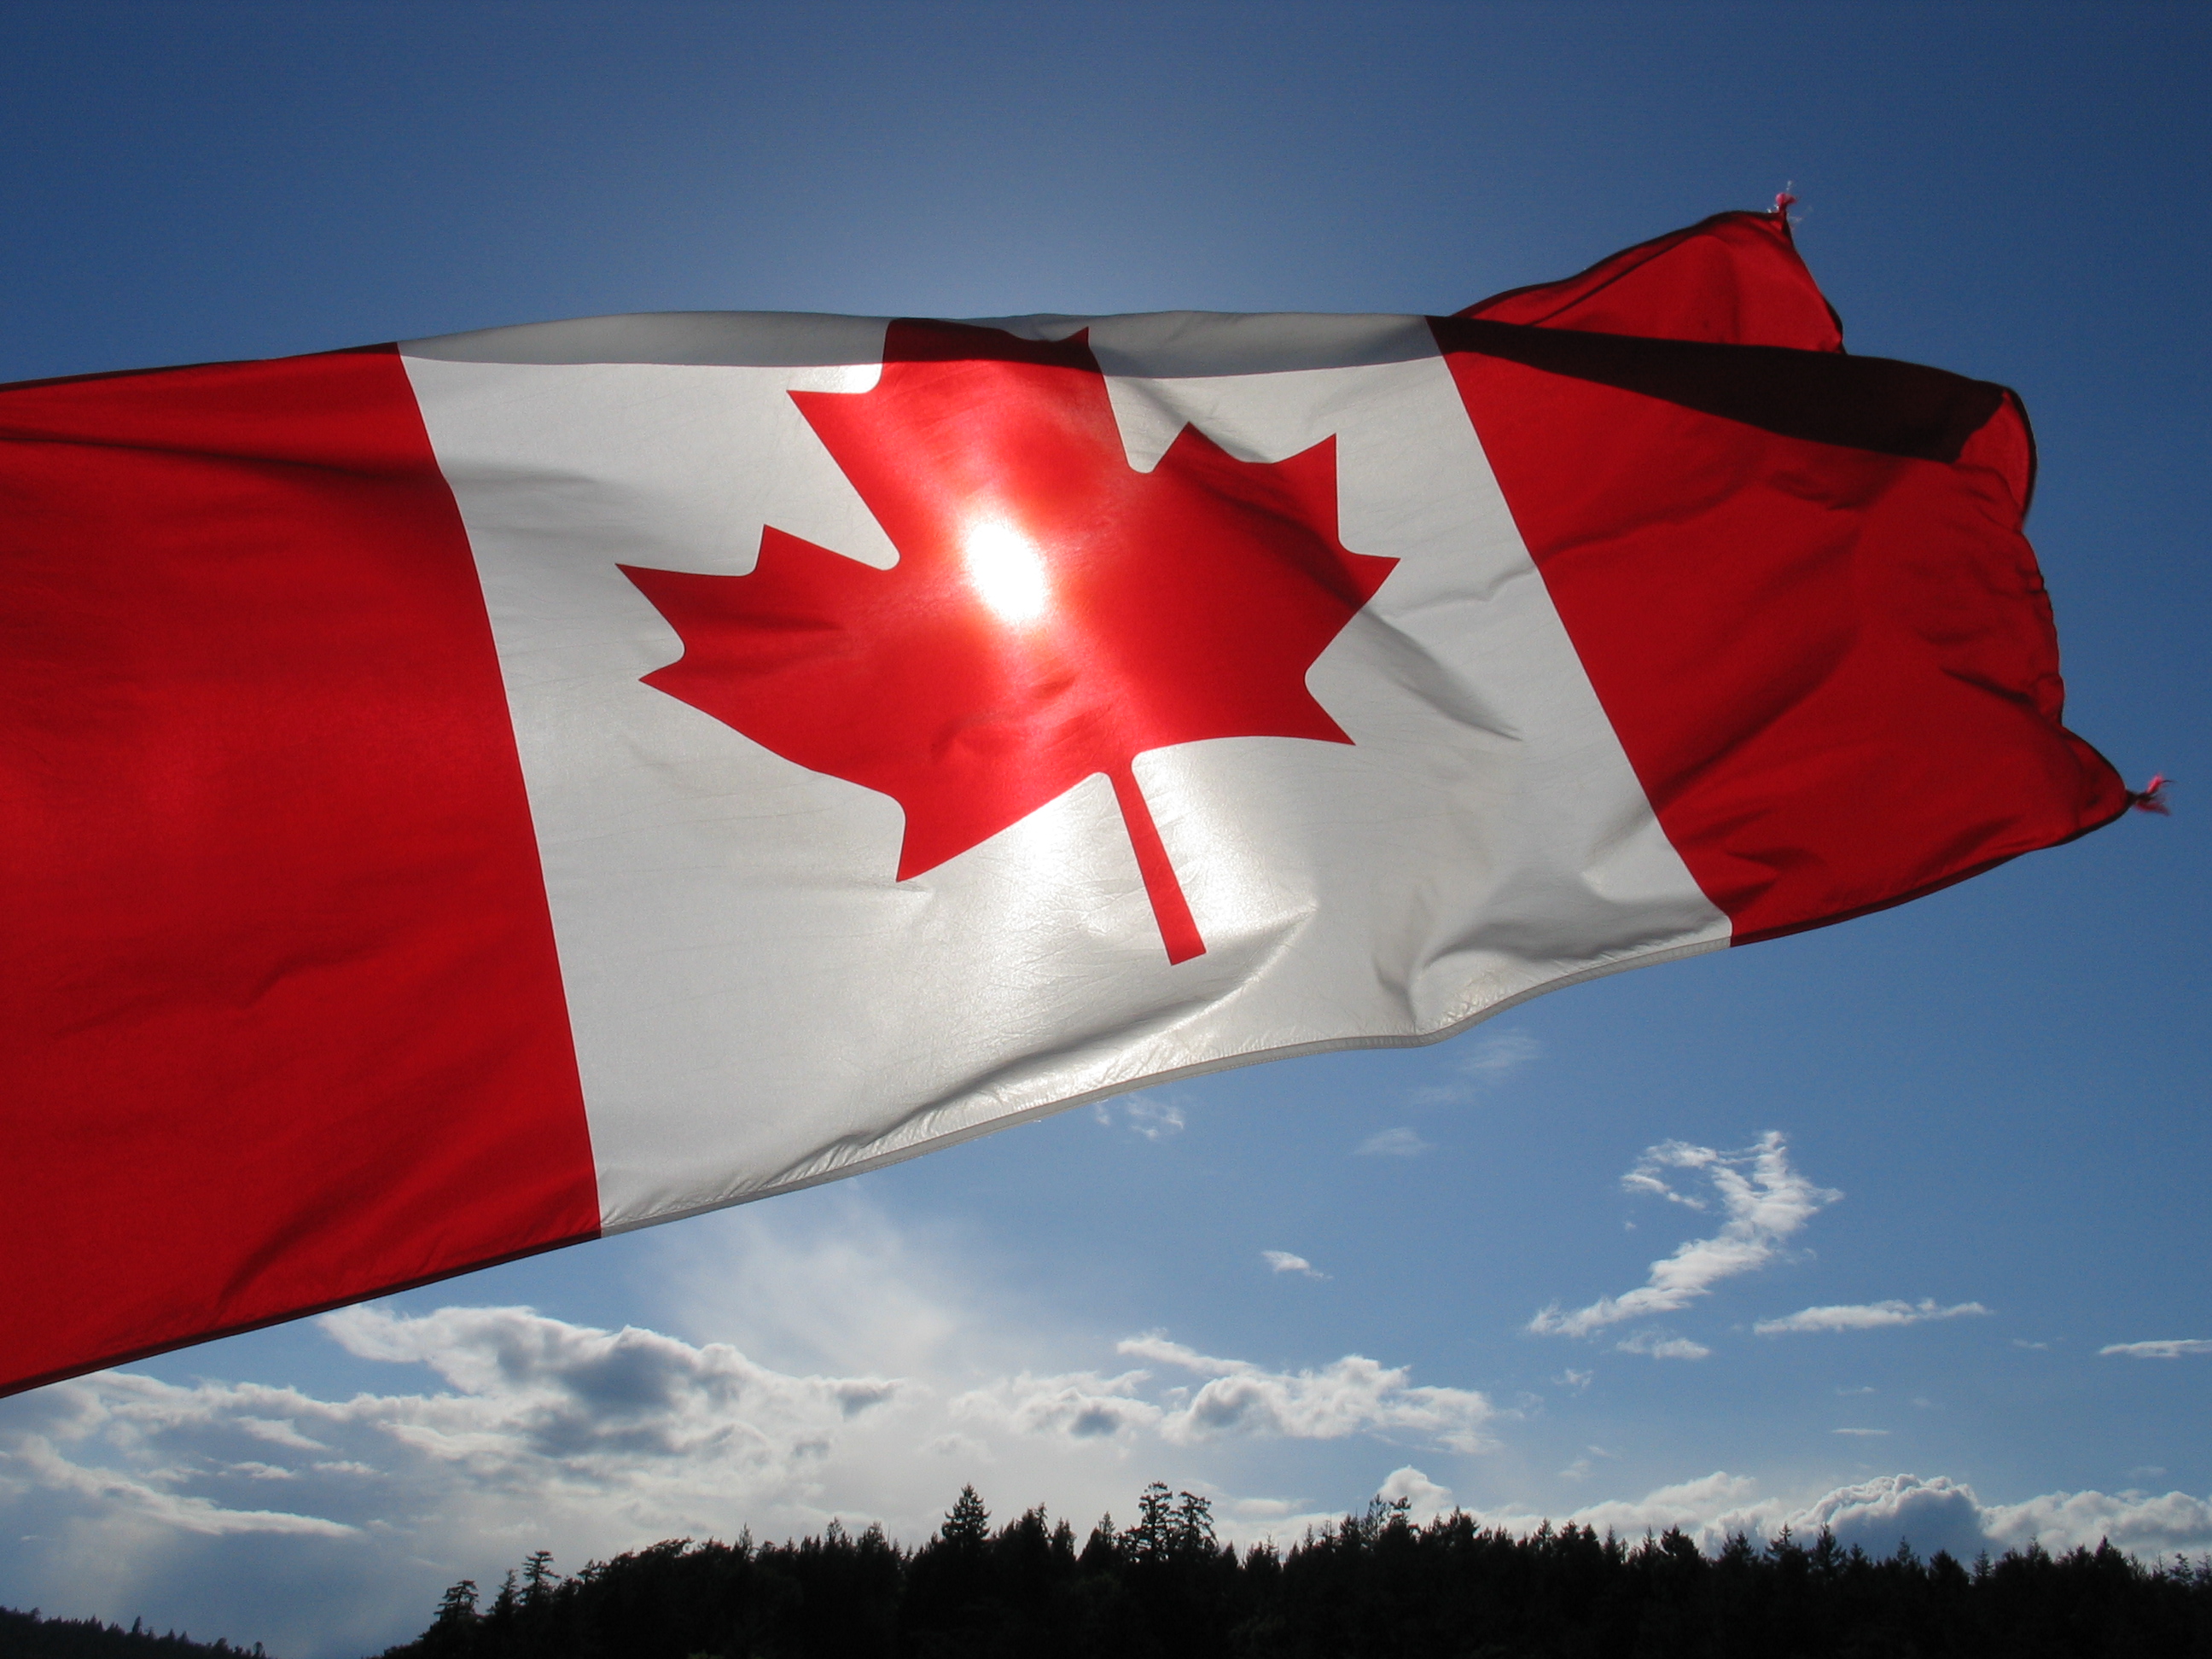 カナダの旗の壁紙,国旗,空,赤,雲,木